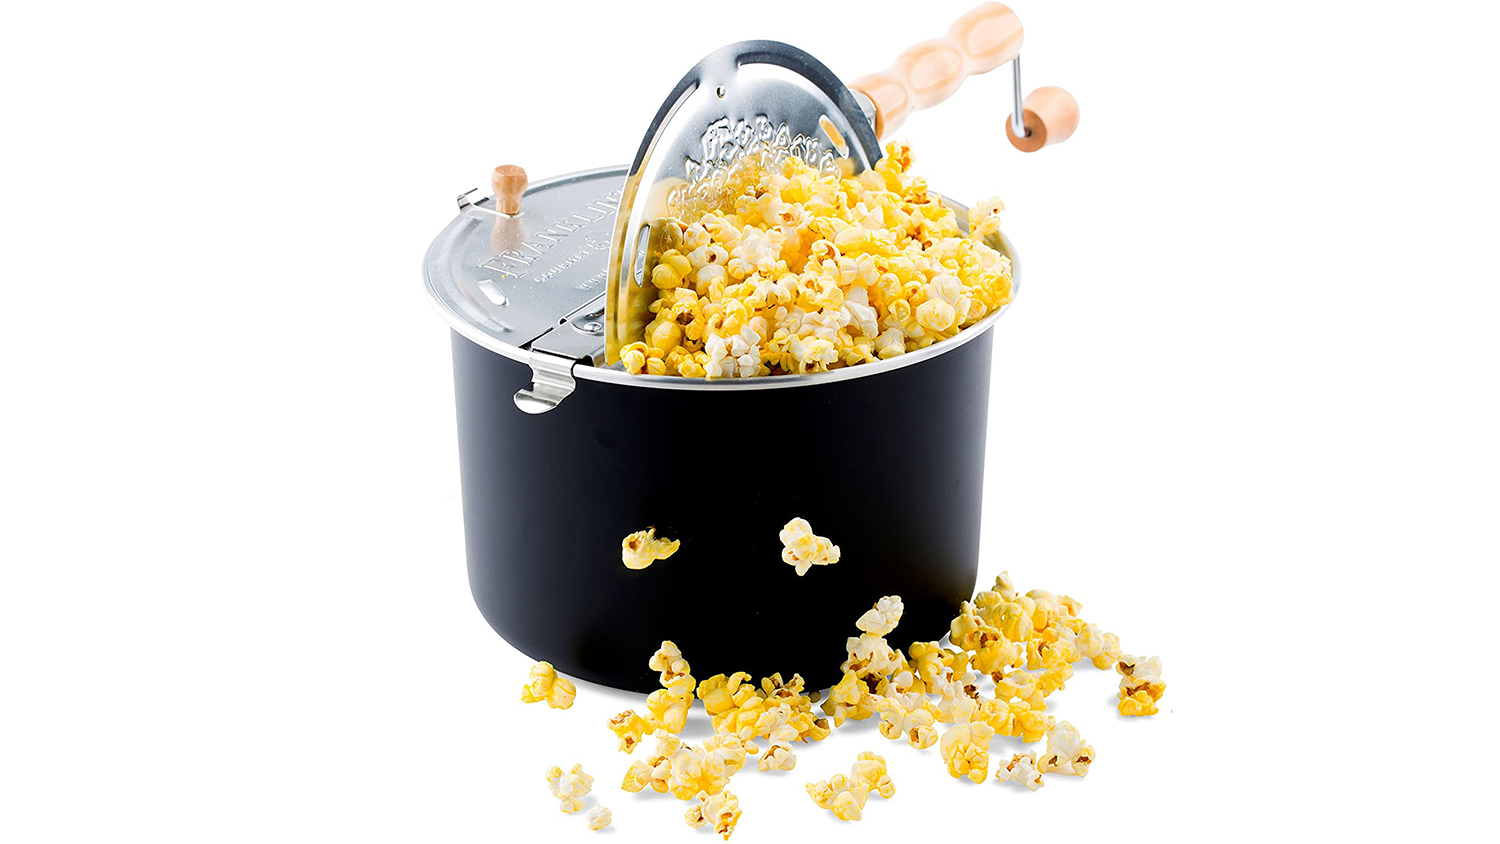 whirly pop popcorn popper